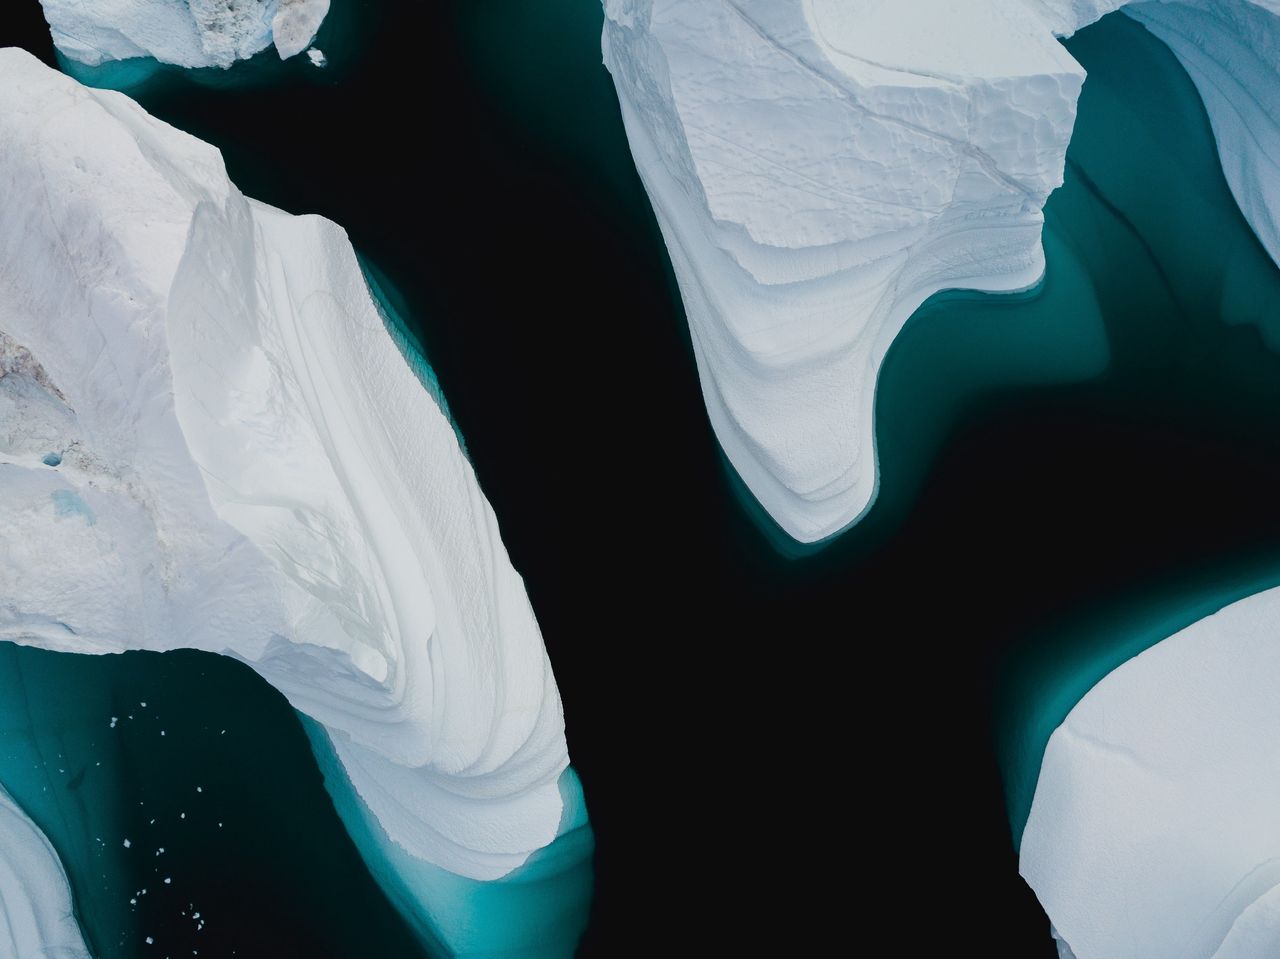 Ogromna dziura w lodzie Arktyki. Naukowcy nie mają dobrych wieści - Zdjęcie ilustracyjne. Połynię można zobaczyć na nagraniu zamieszczonym poniżej 